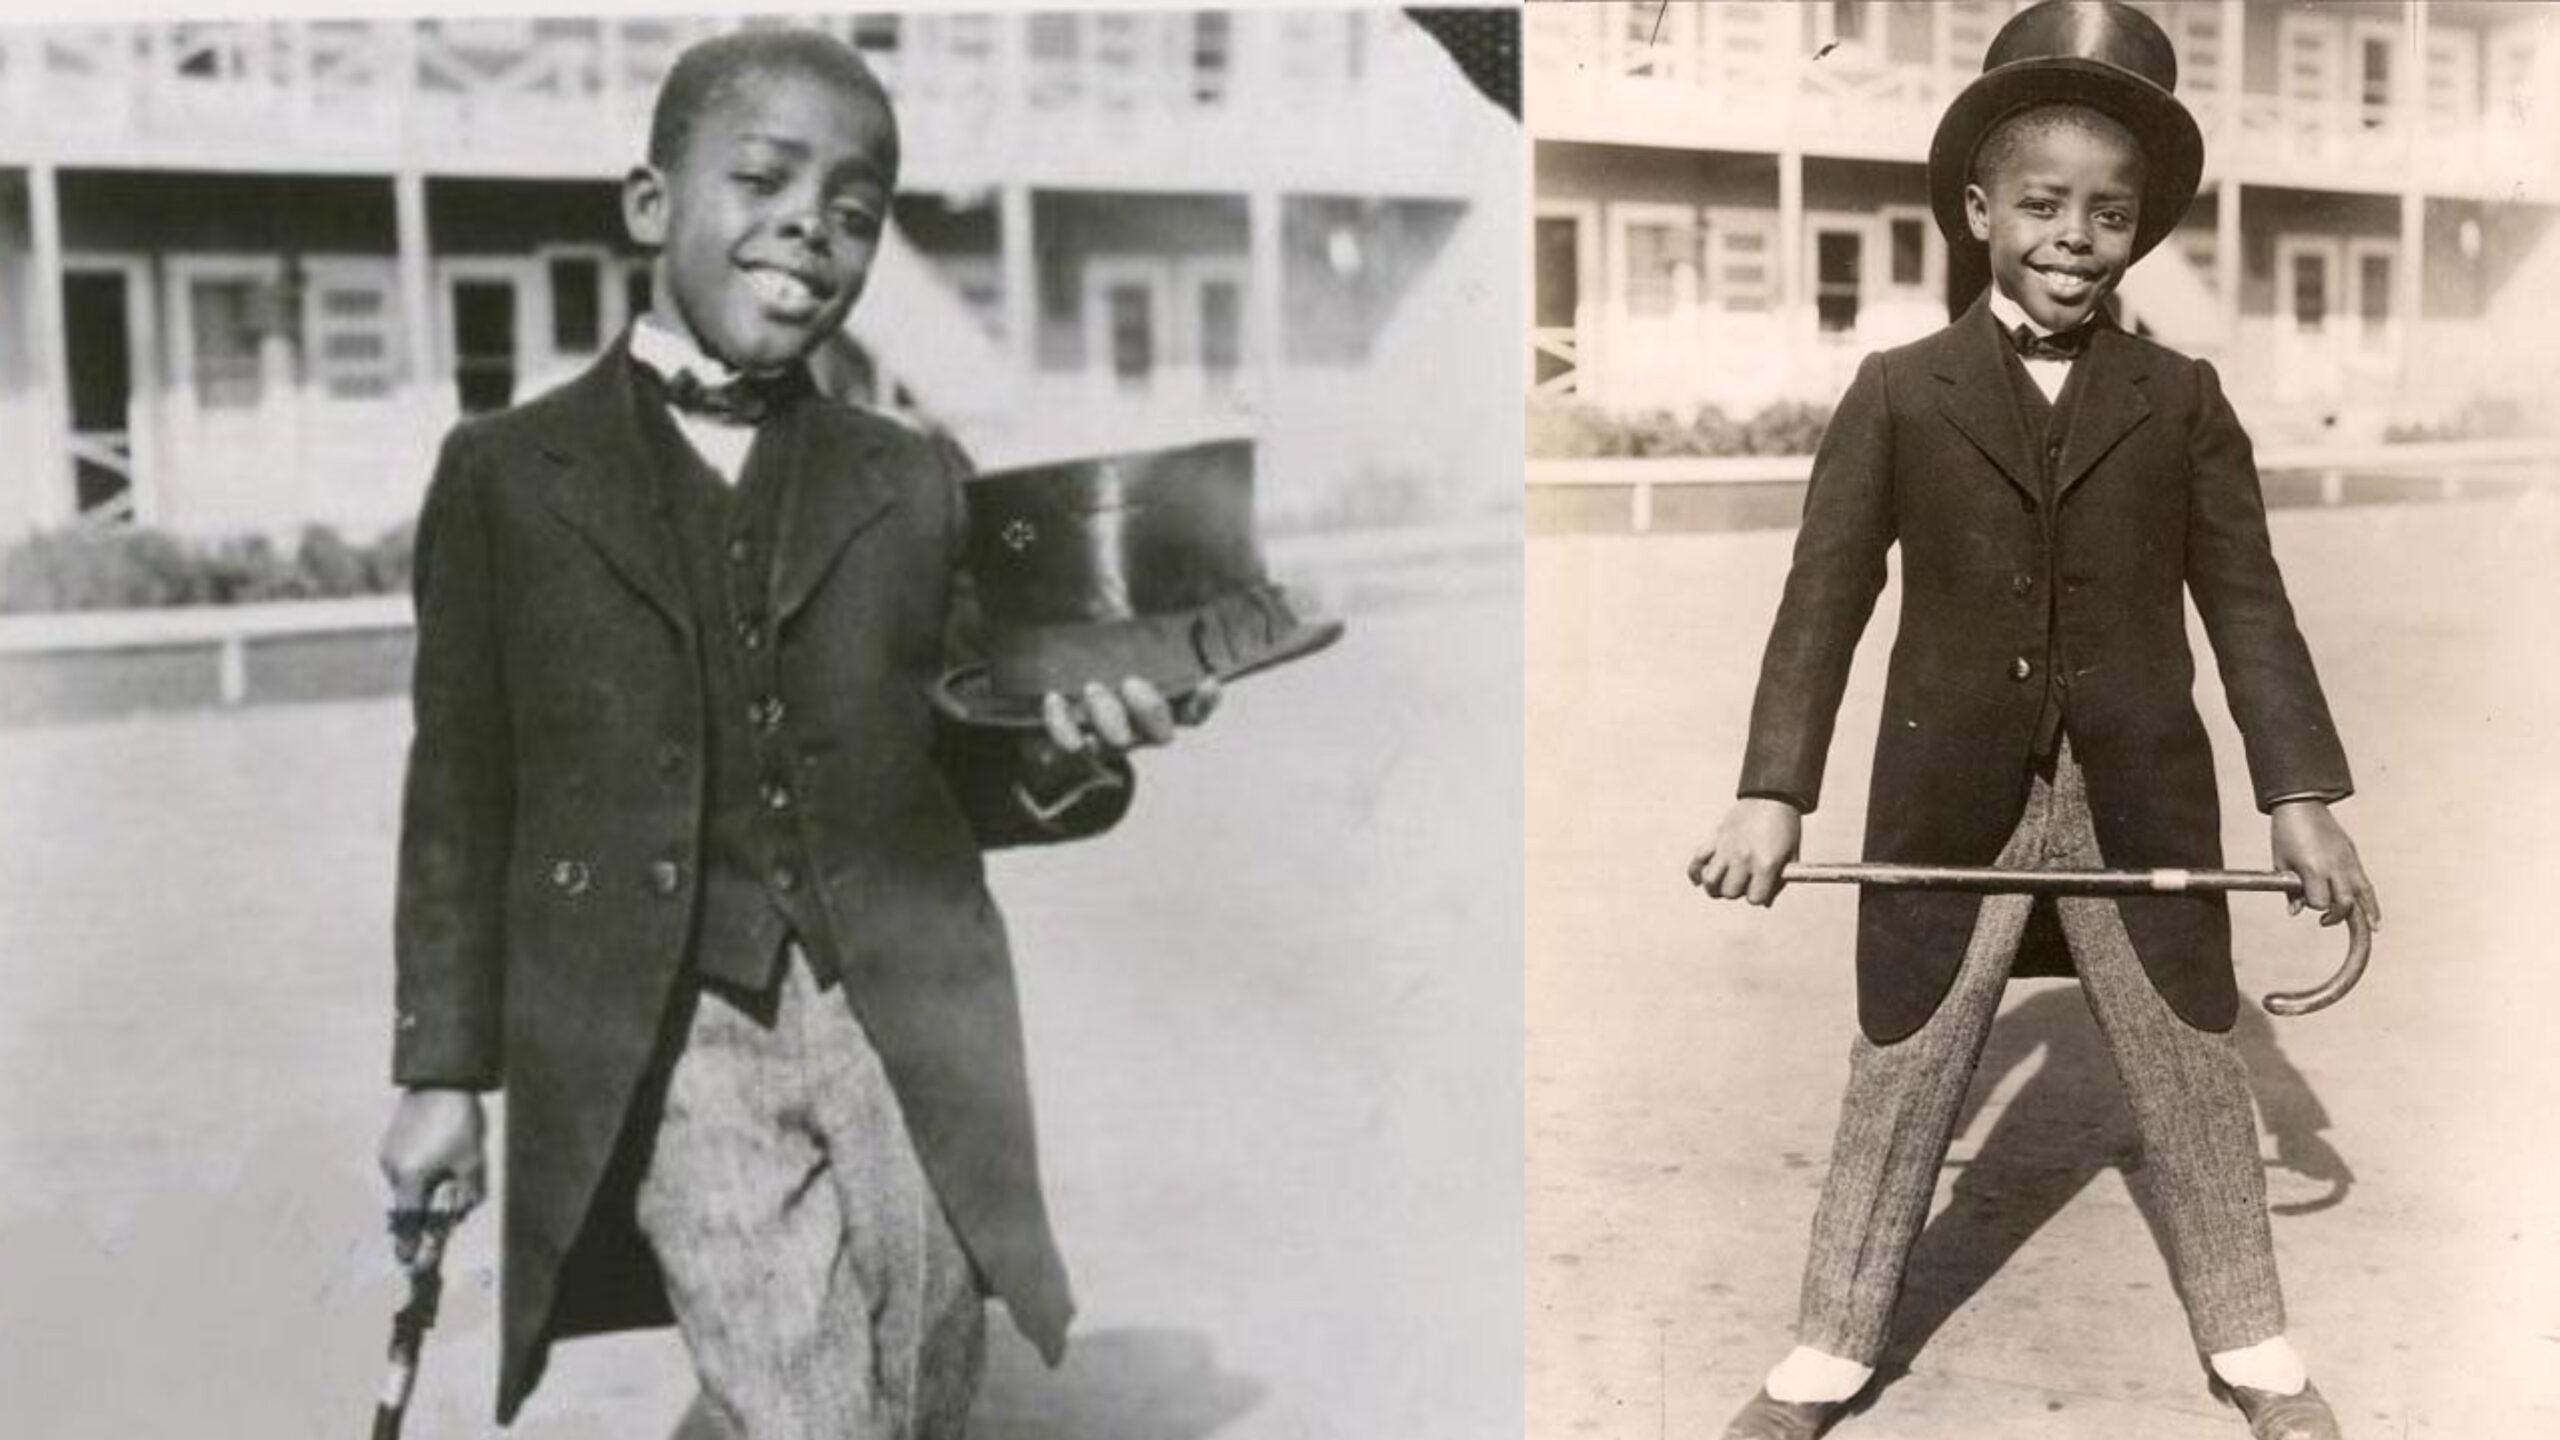 Ernest Fredric “Ernie” Morrison was the first Black child movie star